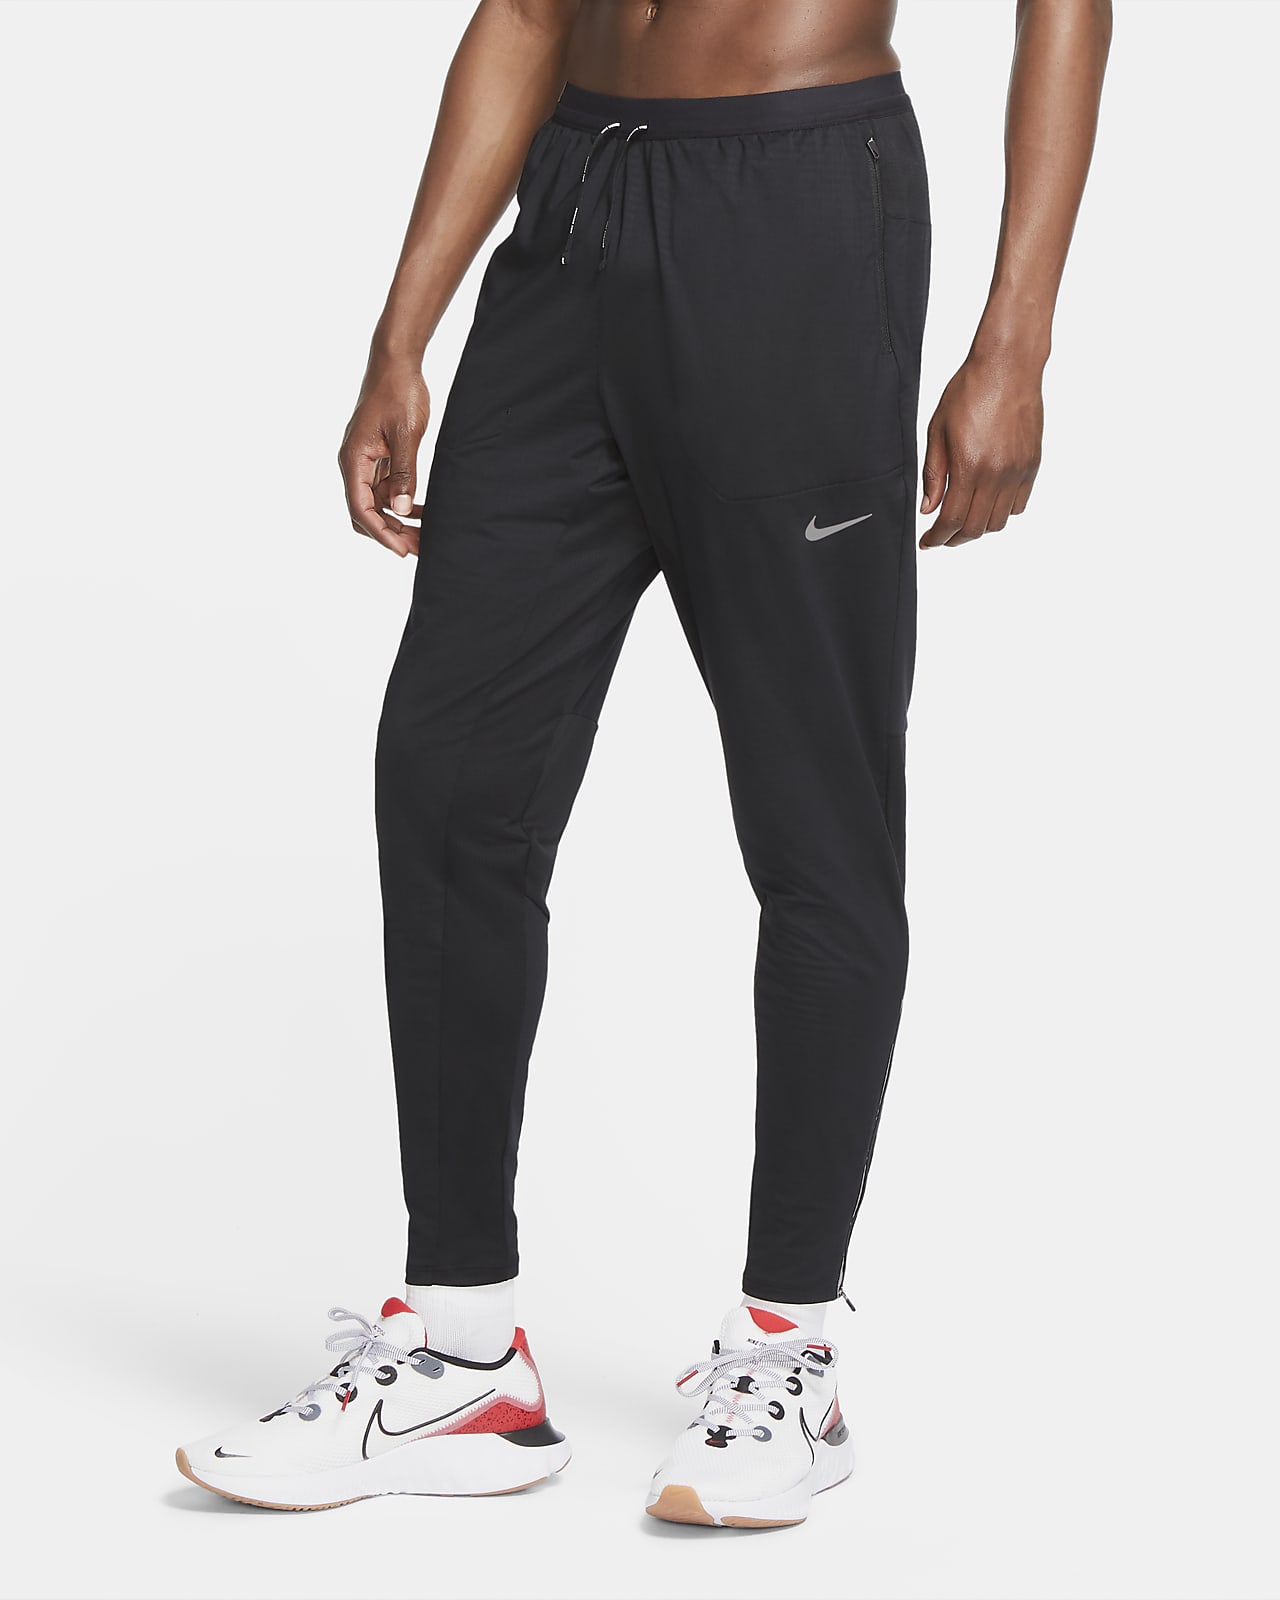 Ανδρικό πλεκτό παντελόνι για τρέξιμο Nike Phenom Elite